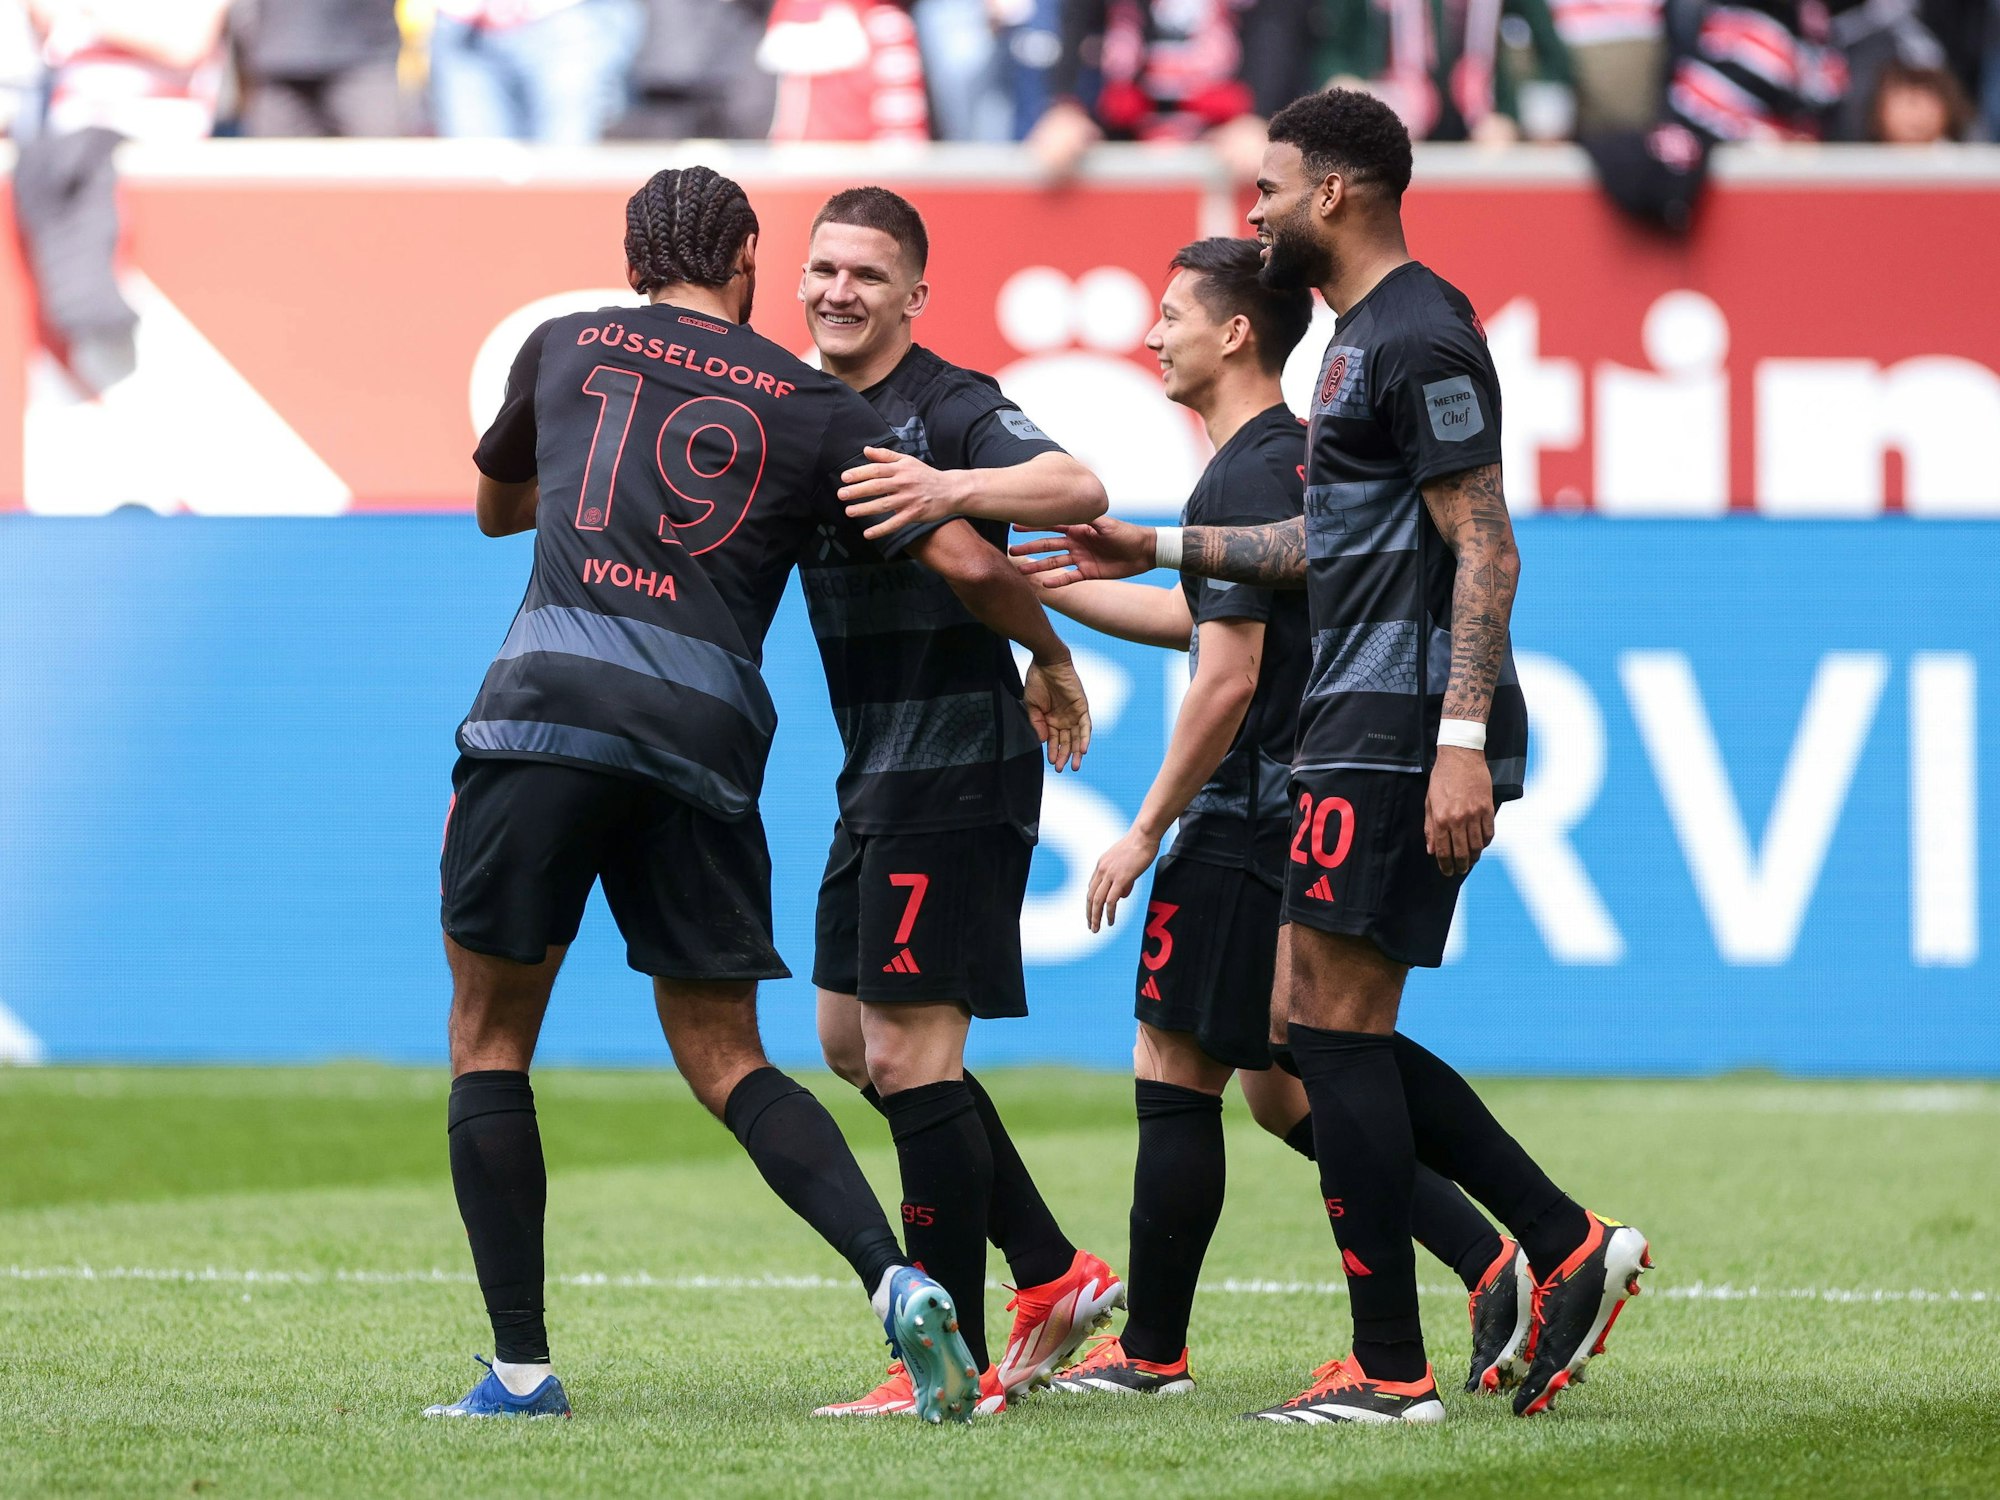 Die Spieler von Fortuna Düsseldorf jubeln im Spiel gegen Eintracht Braunschweig.